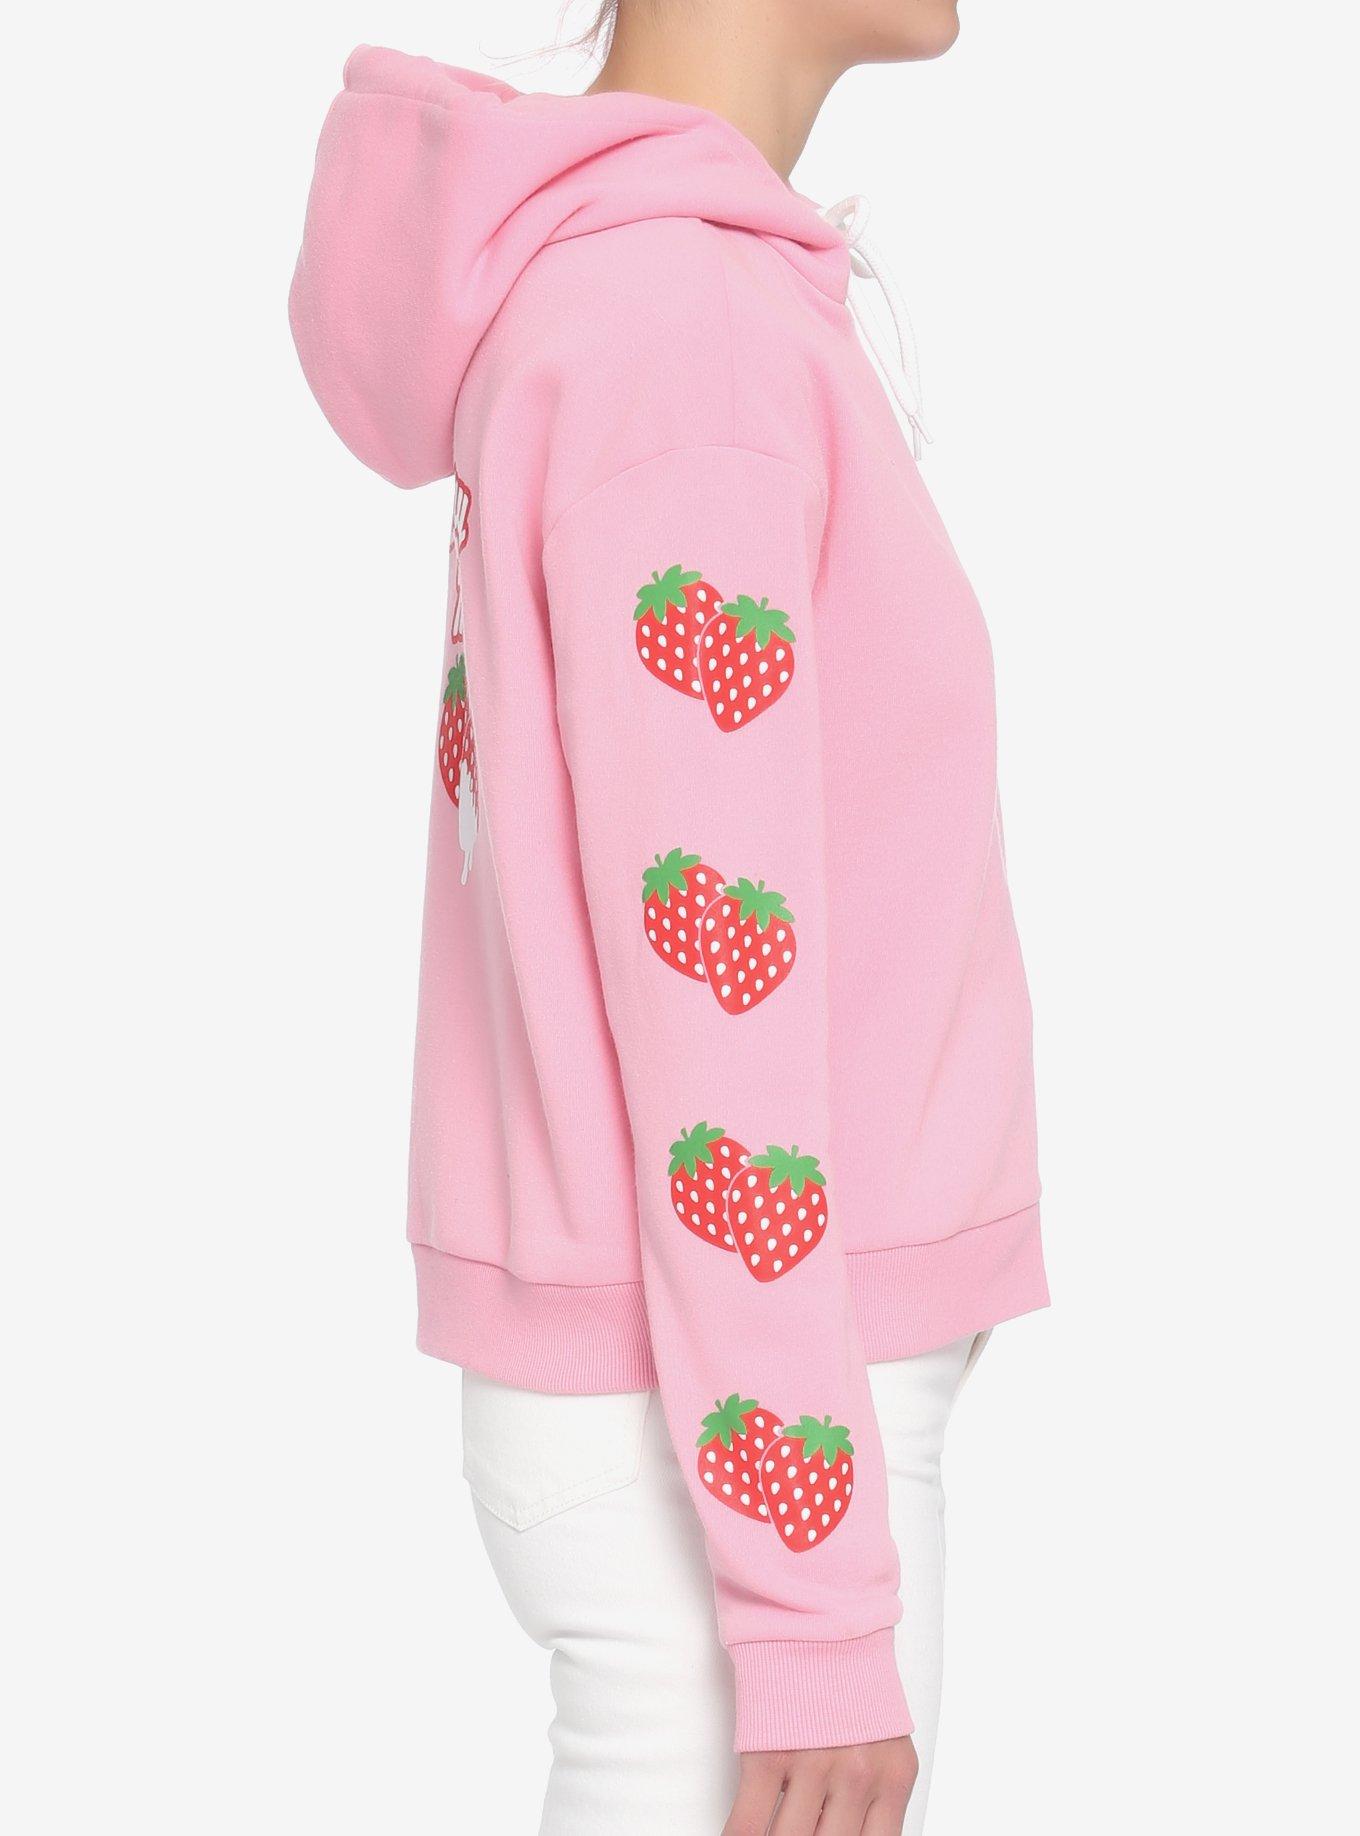 Strawberry Milk Girls Crop Hoodie, PINK, alternate